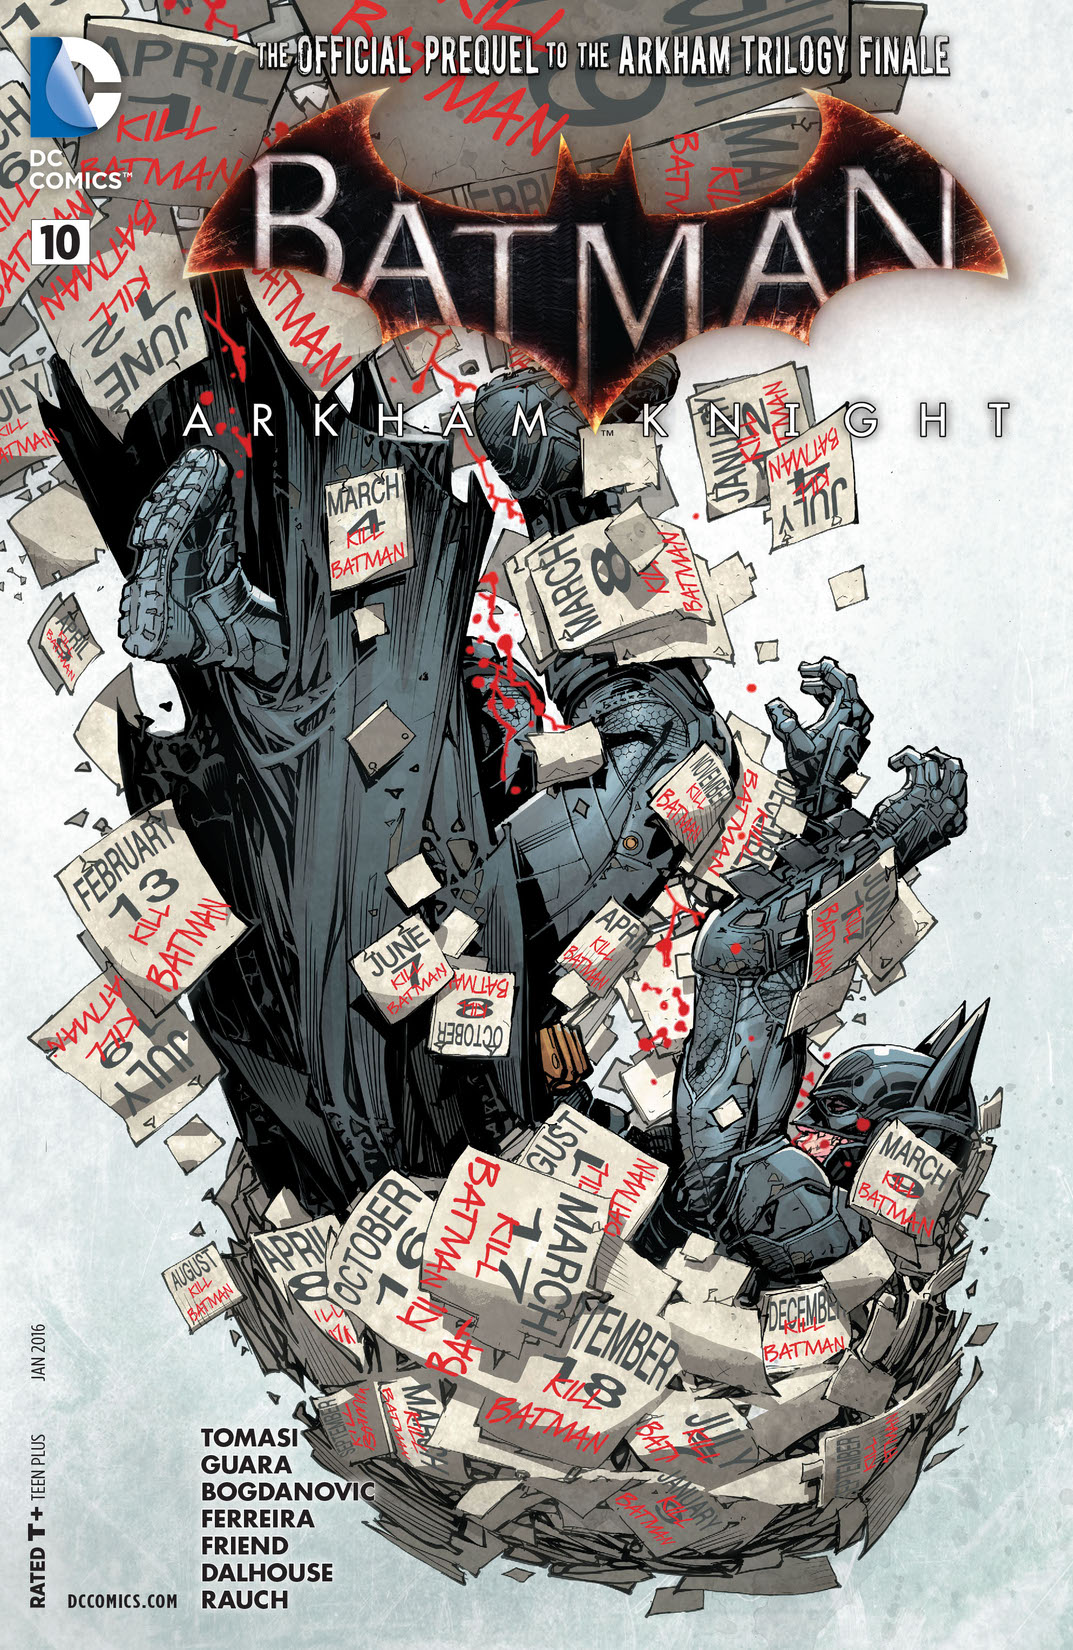 Batman: Arkham Knight #10 preview images